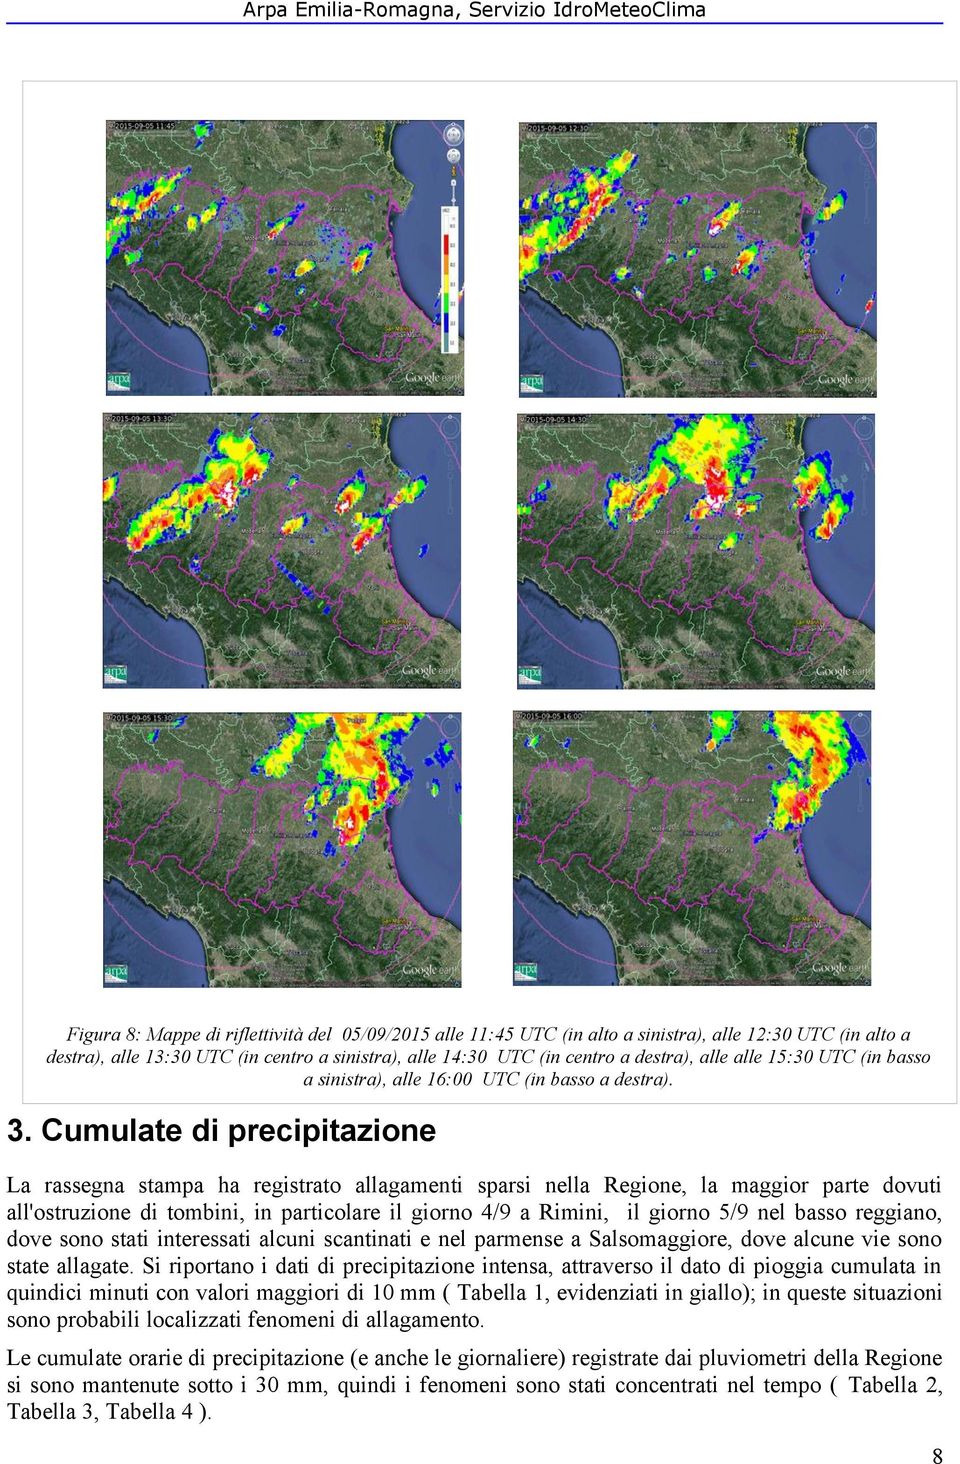 Cumulate di precipitazione La rassegna stampa ha registrato allagamenti sparsi nella Regione, la maggior parte dovuti all'ostruzione di tombini, in particolare il giorno 4/9 a Rimini, il giorno 5/9